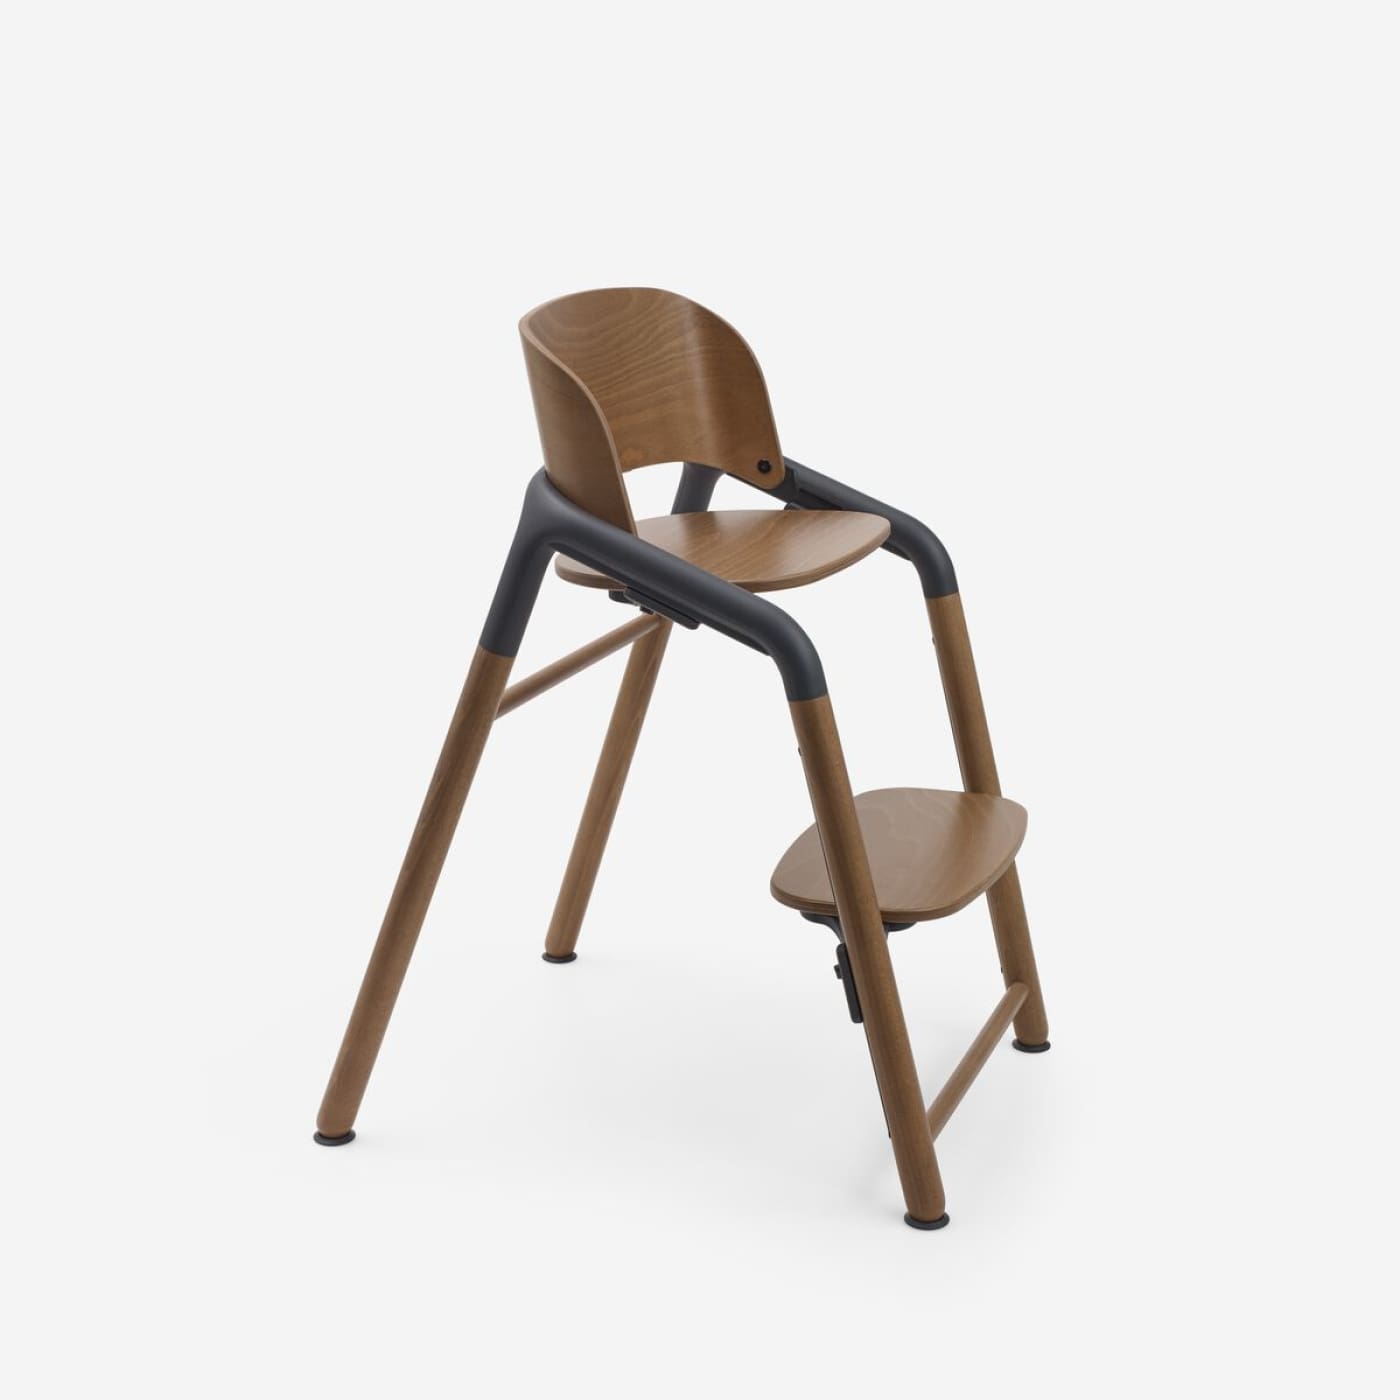 Bugaboo Giraffe High Chair - Warm Wood/Grey - Warm Wood/Grey - NURSING & FEEDING - HIGH CHAIRS/BOOSTER SEATS